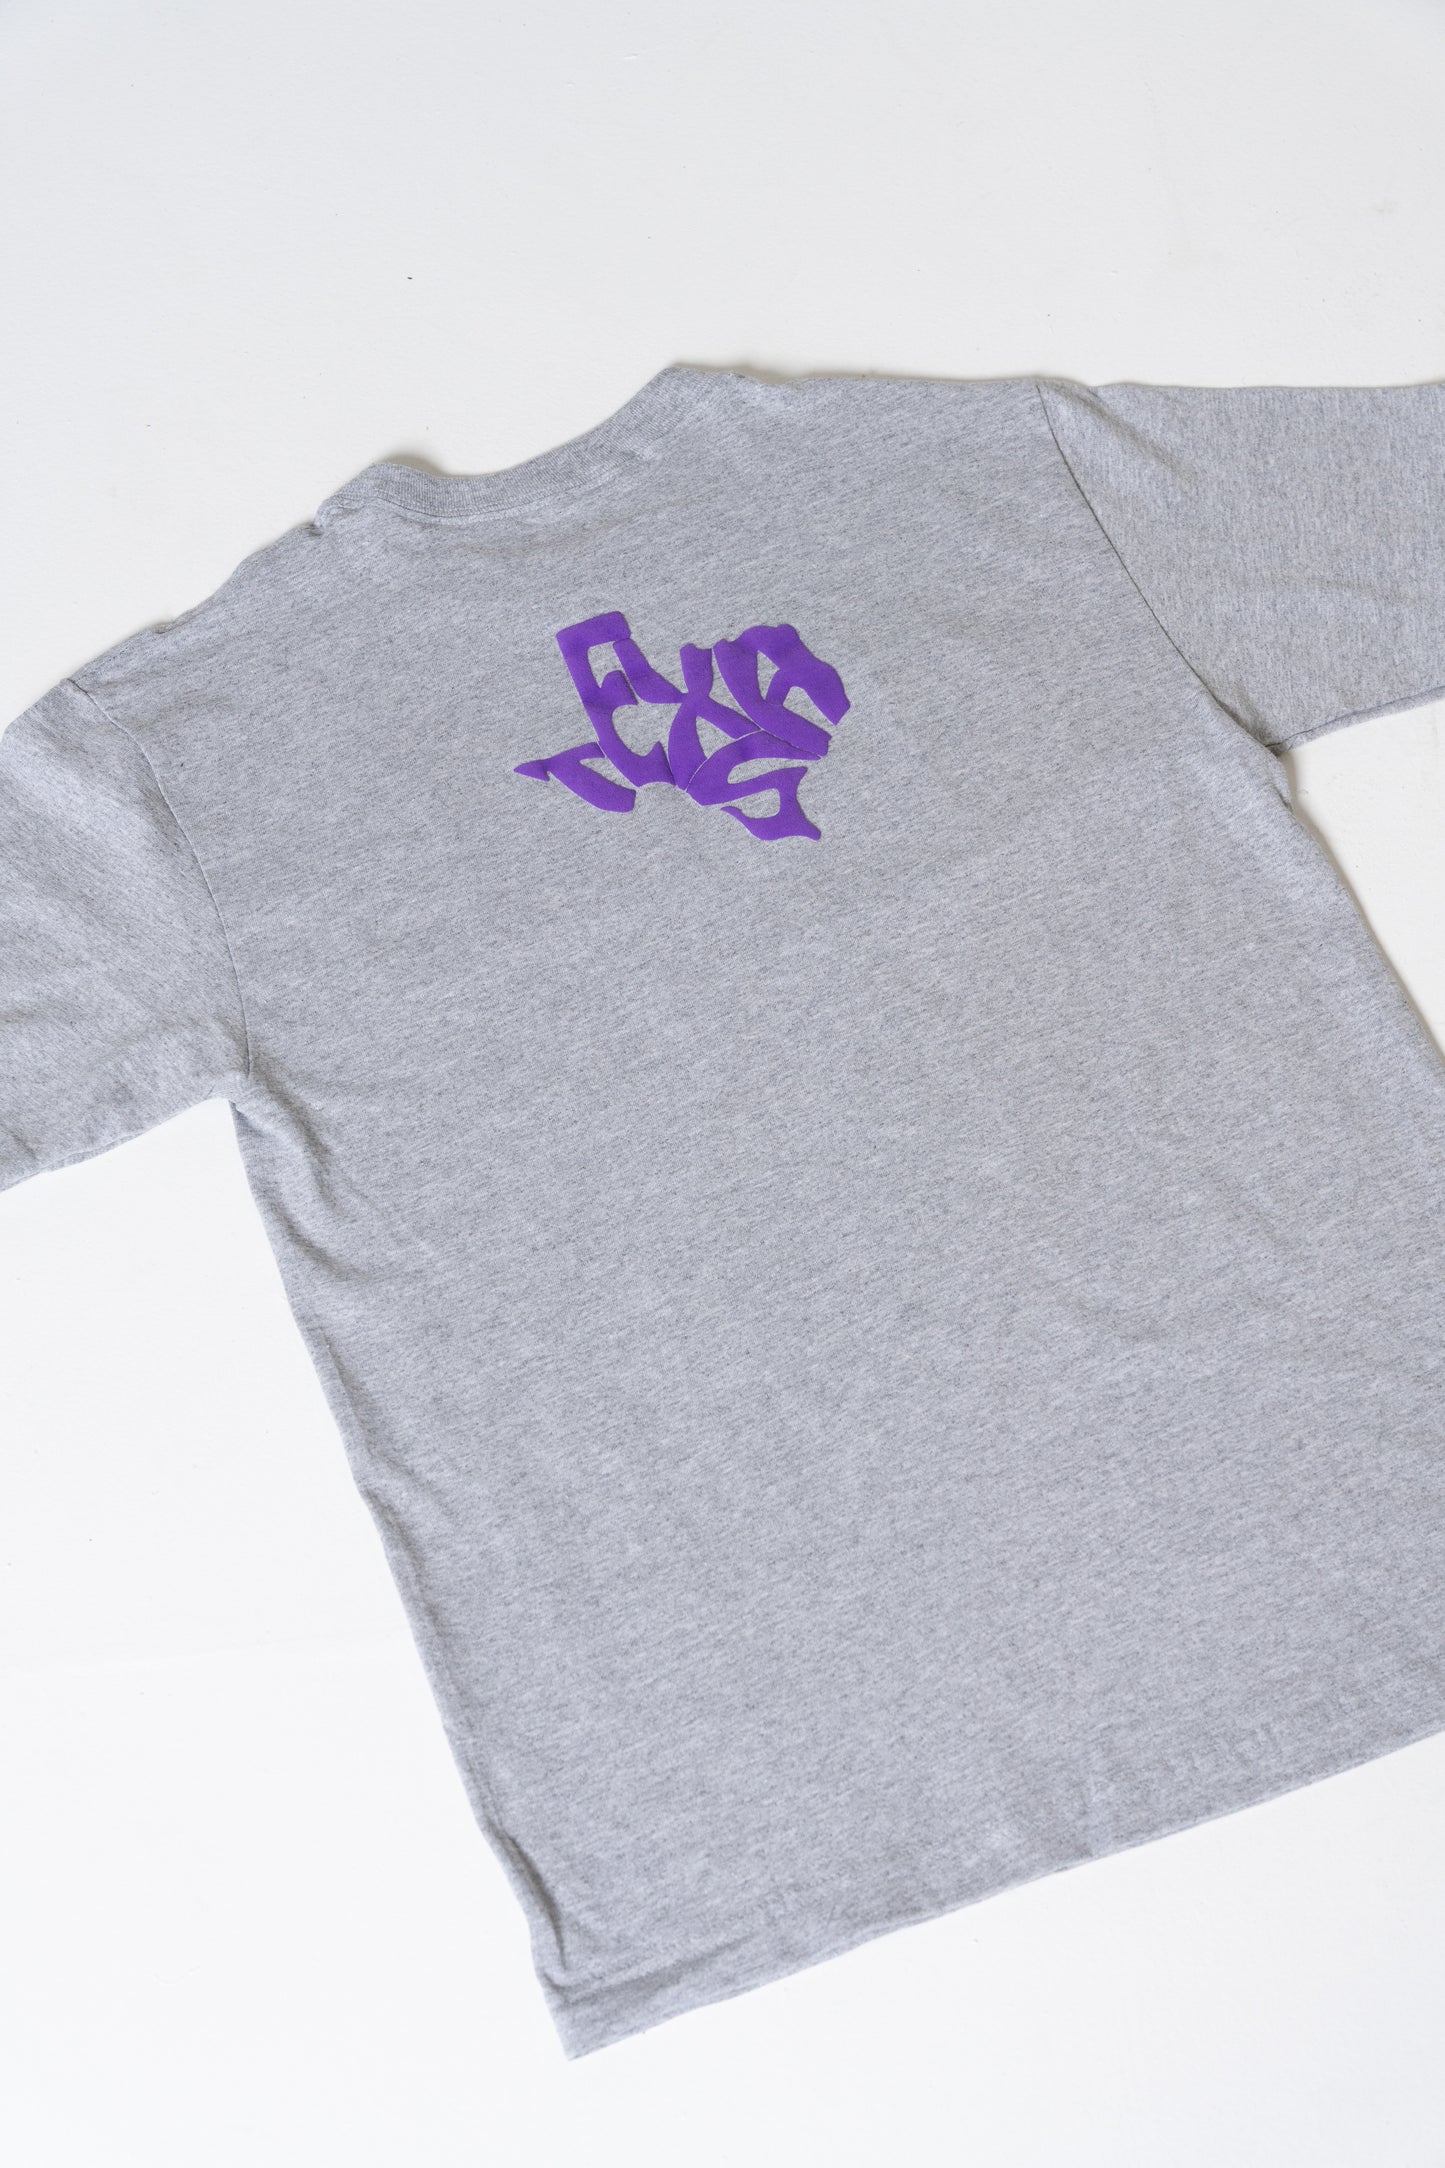 TXHSFB T-Shirt Purple/Grey